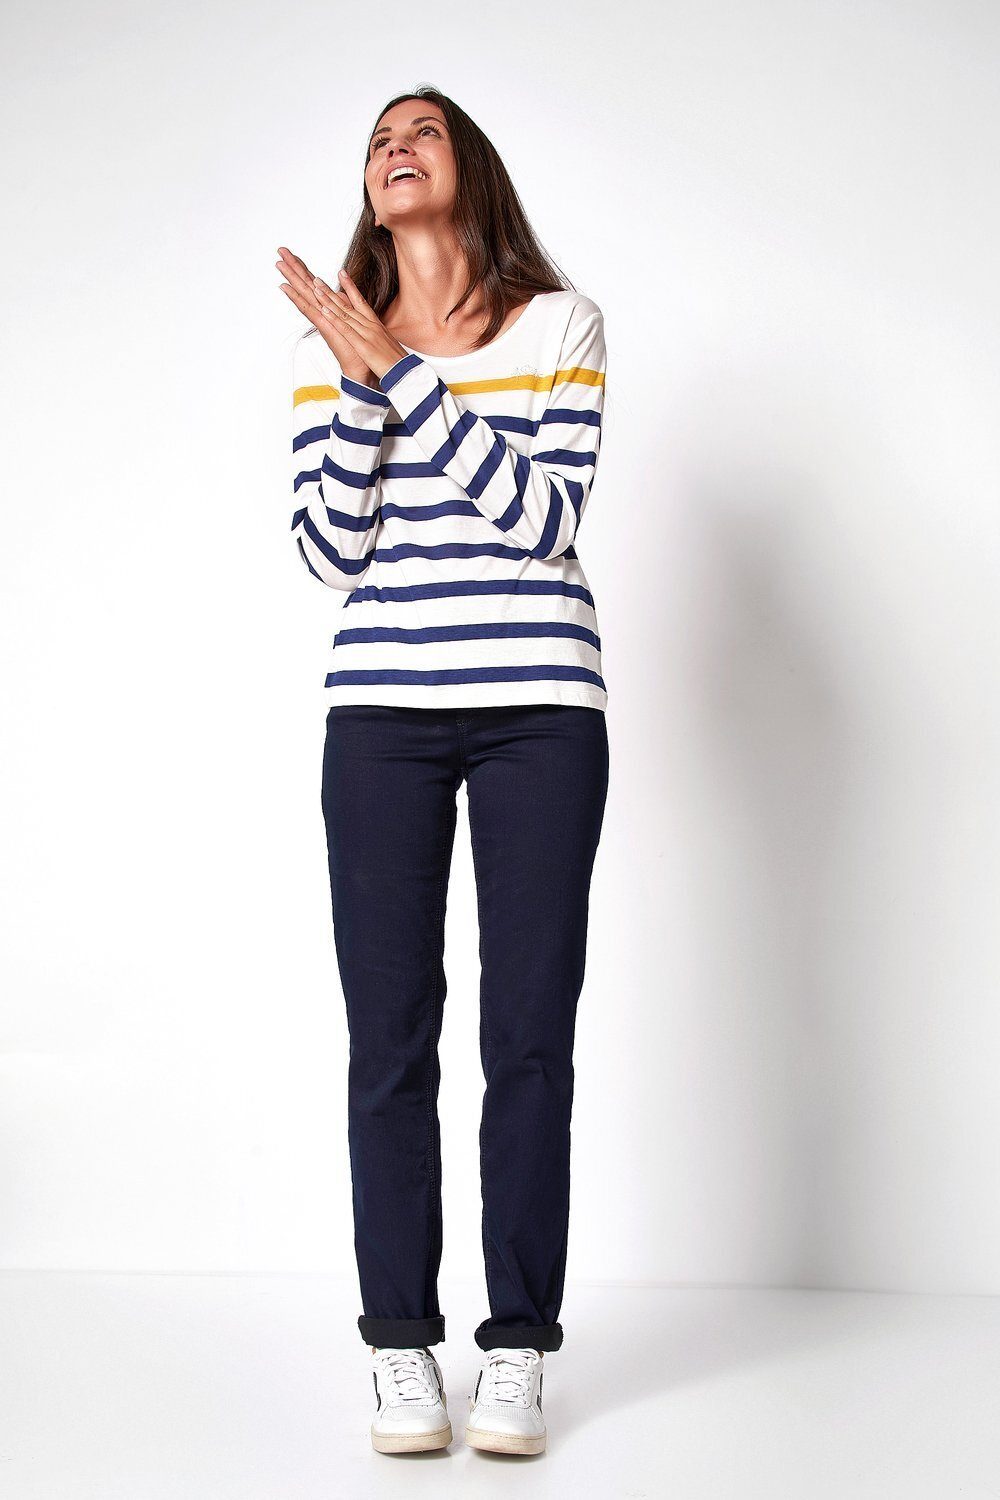 TONI 5-Pocket-Jeans Liv - dunkelblau Regular-Fit in 059